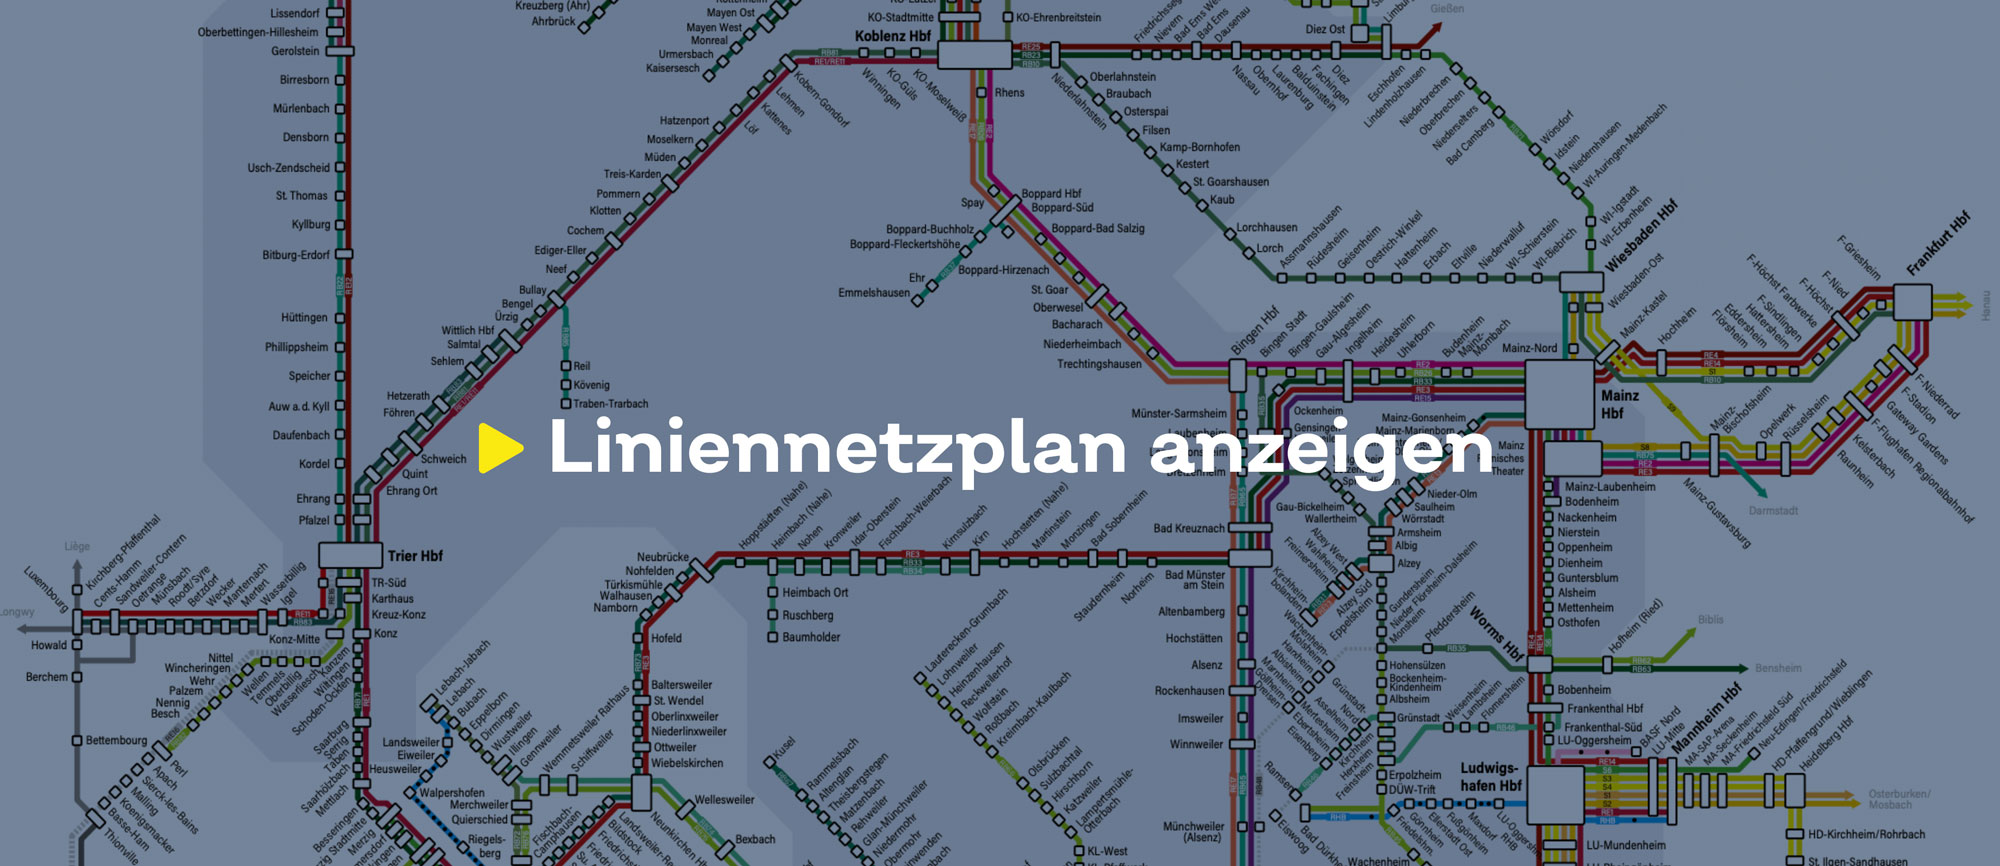 Text 'Liniennetzplan anzeigen' auf einem bläulich eingefärbten Hintergrund, der einen Ausschnitt des Liniennetzes zeigt